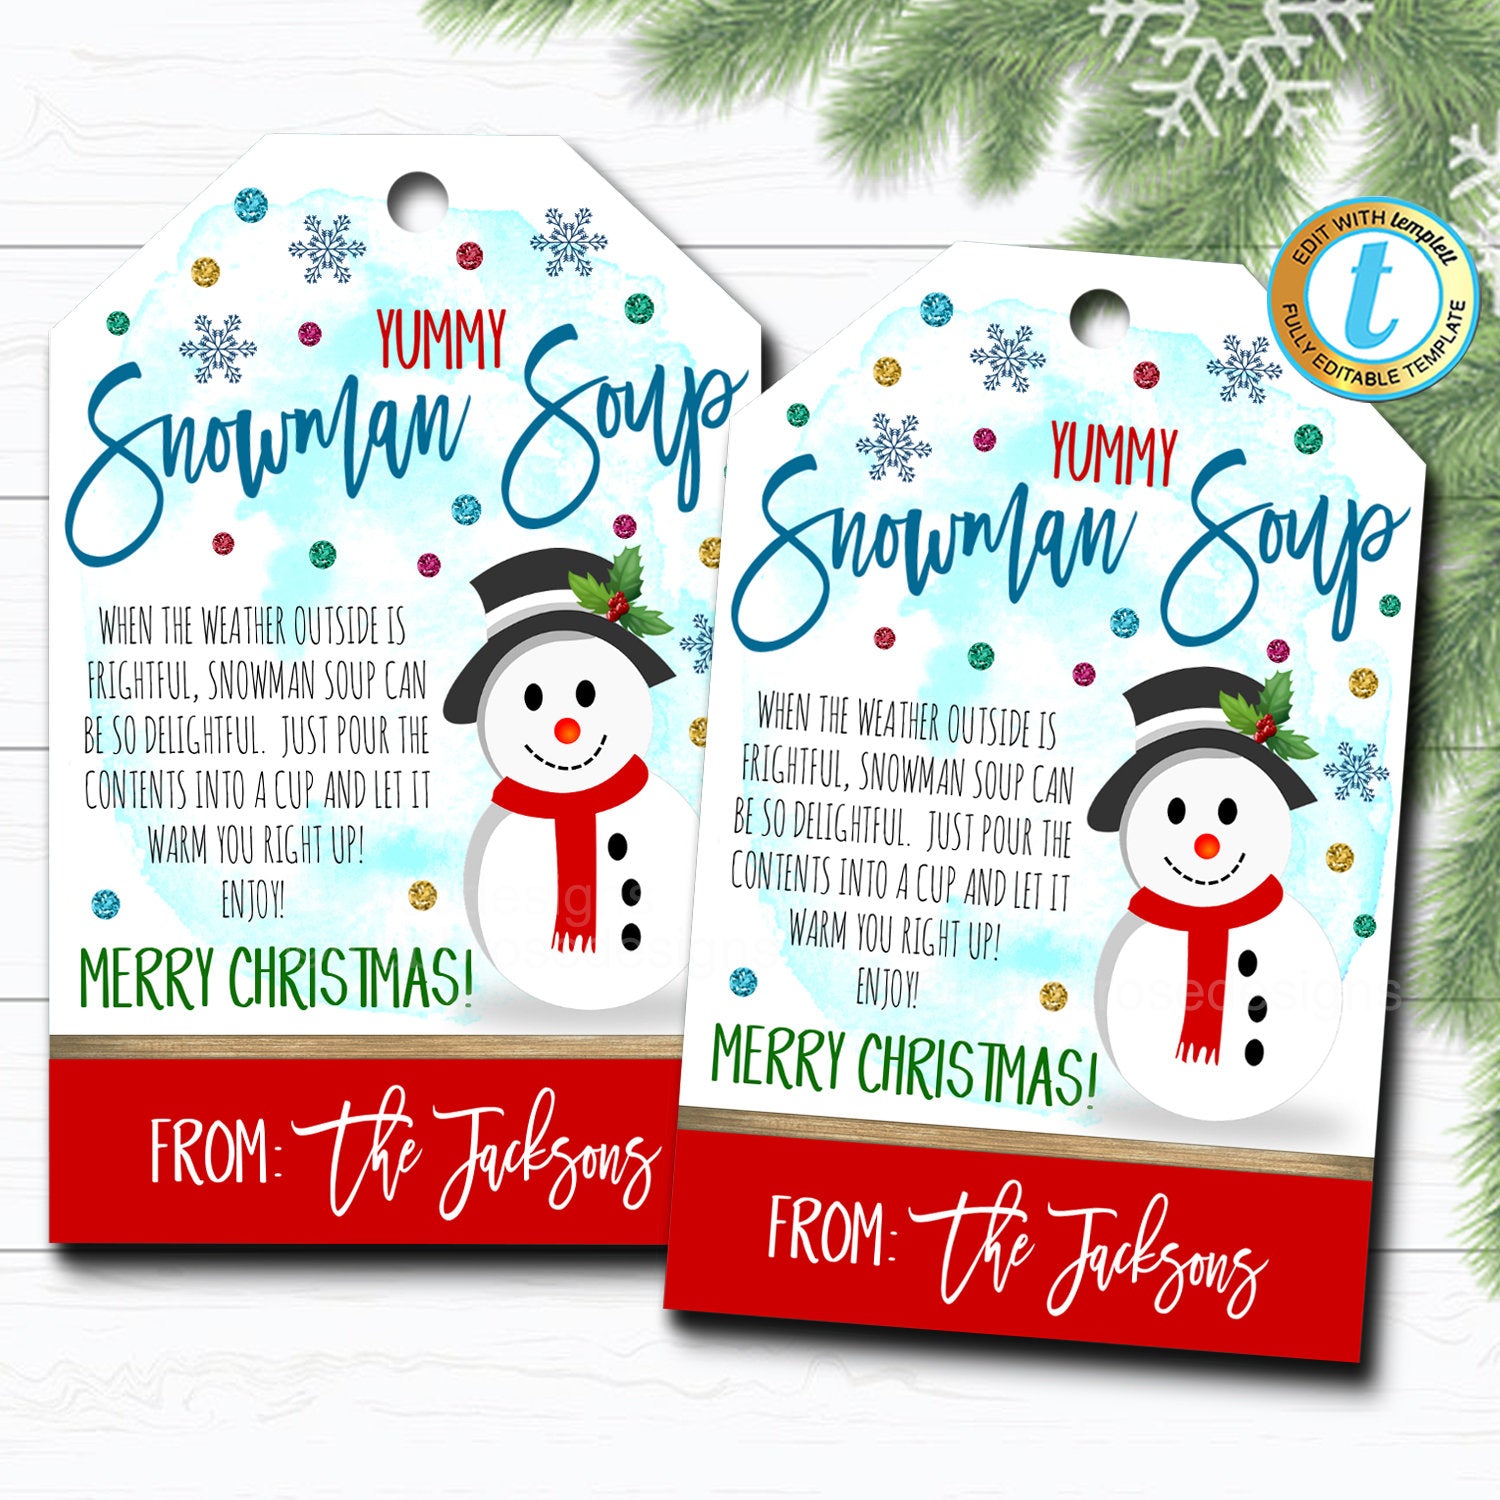 3 Free Christmas Gift Tag Printables for Easy Christmas Magic